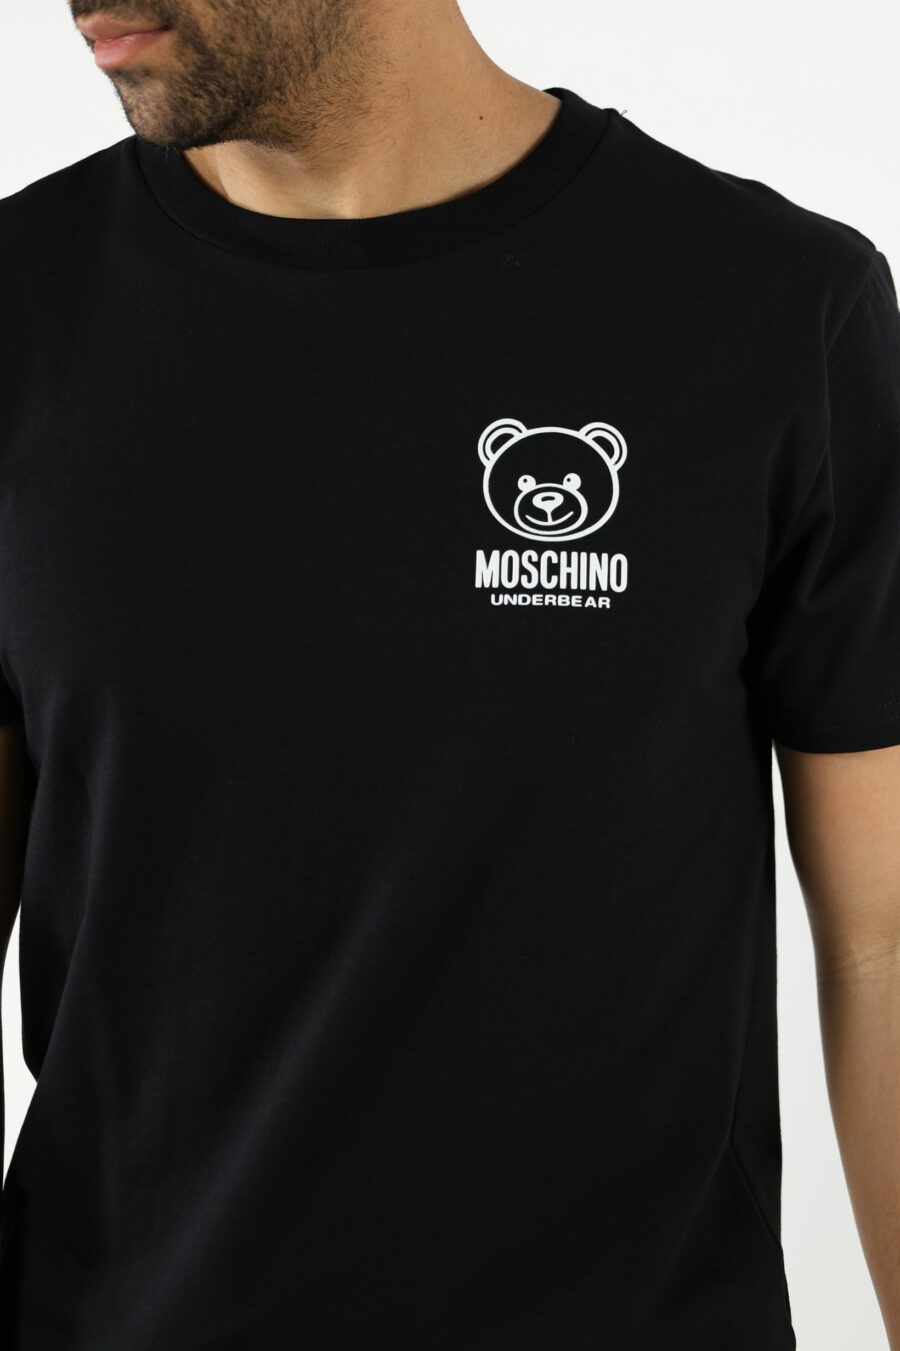 T-Shirt schwarz mit Mini-Logo Bär "underbear" in weißem Gummi - 111015